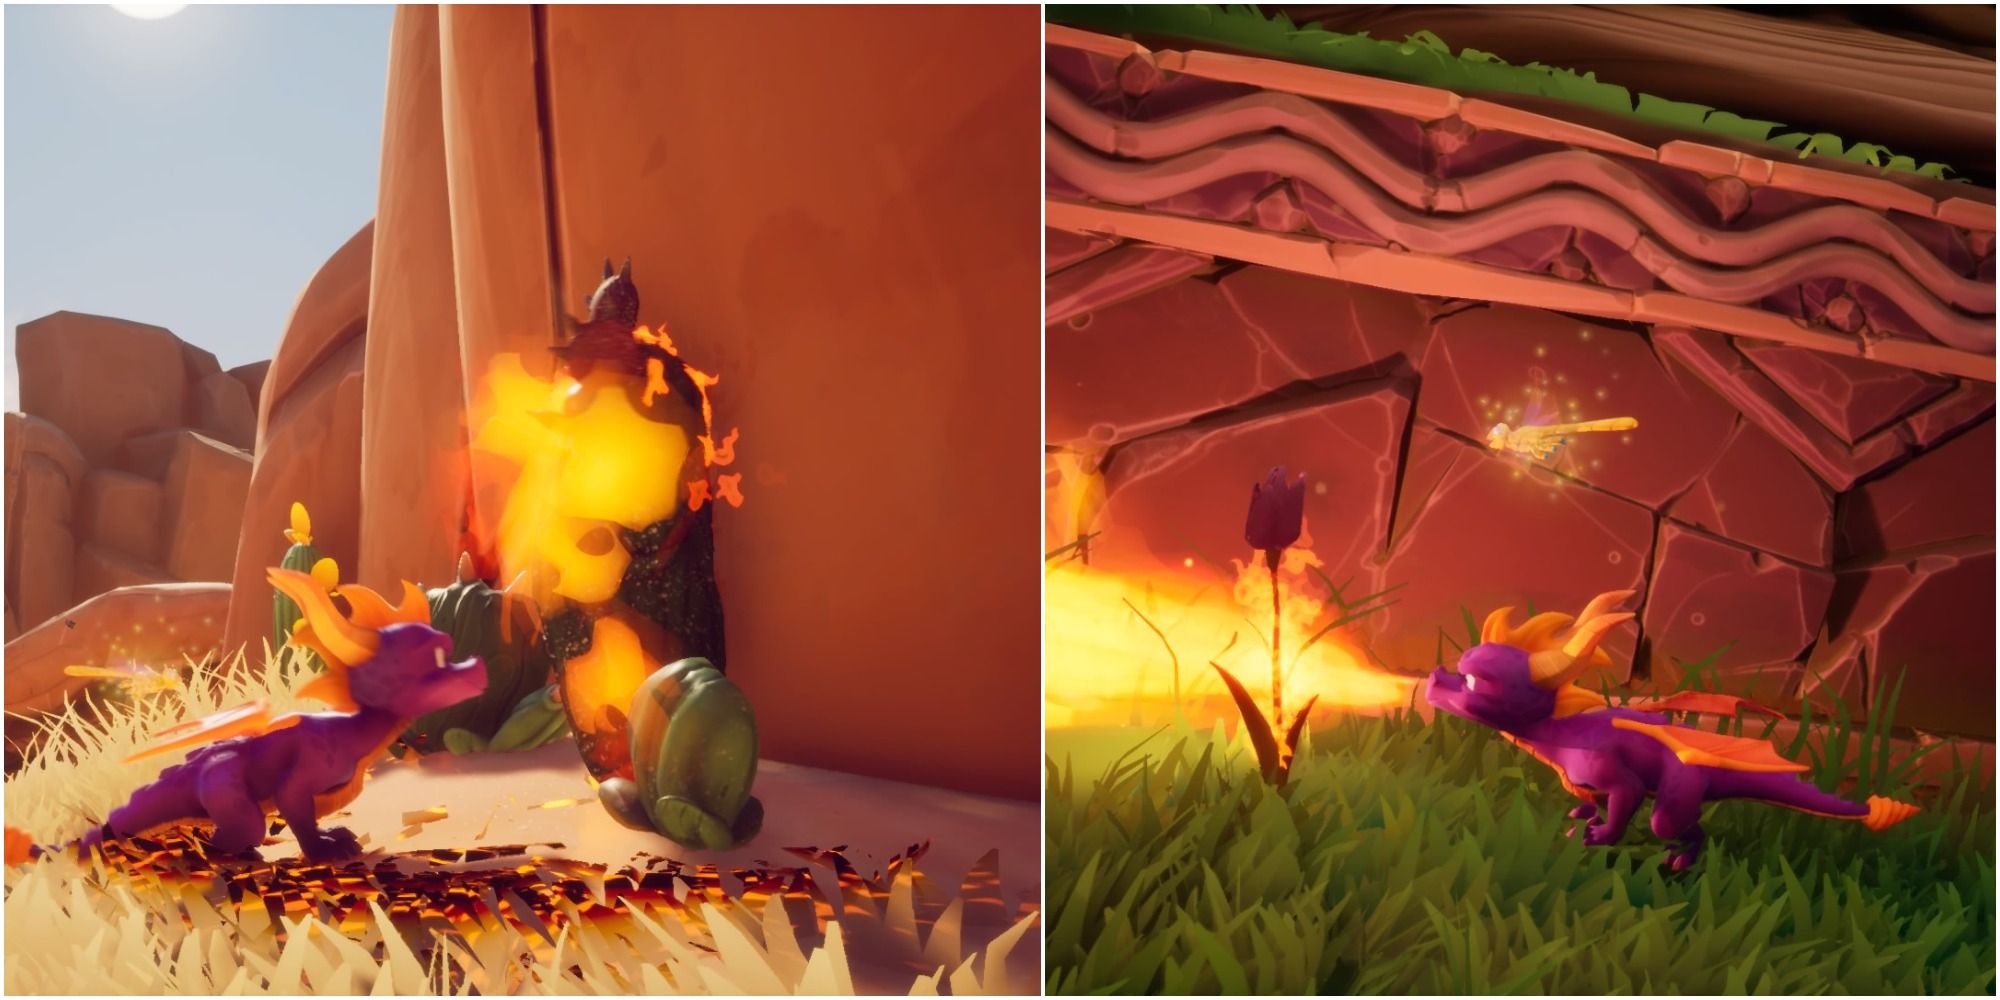 Spyro The Dragon Burning Plants